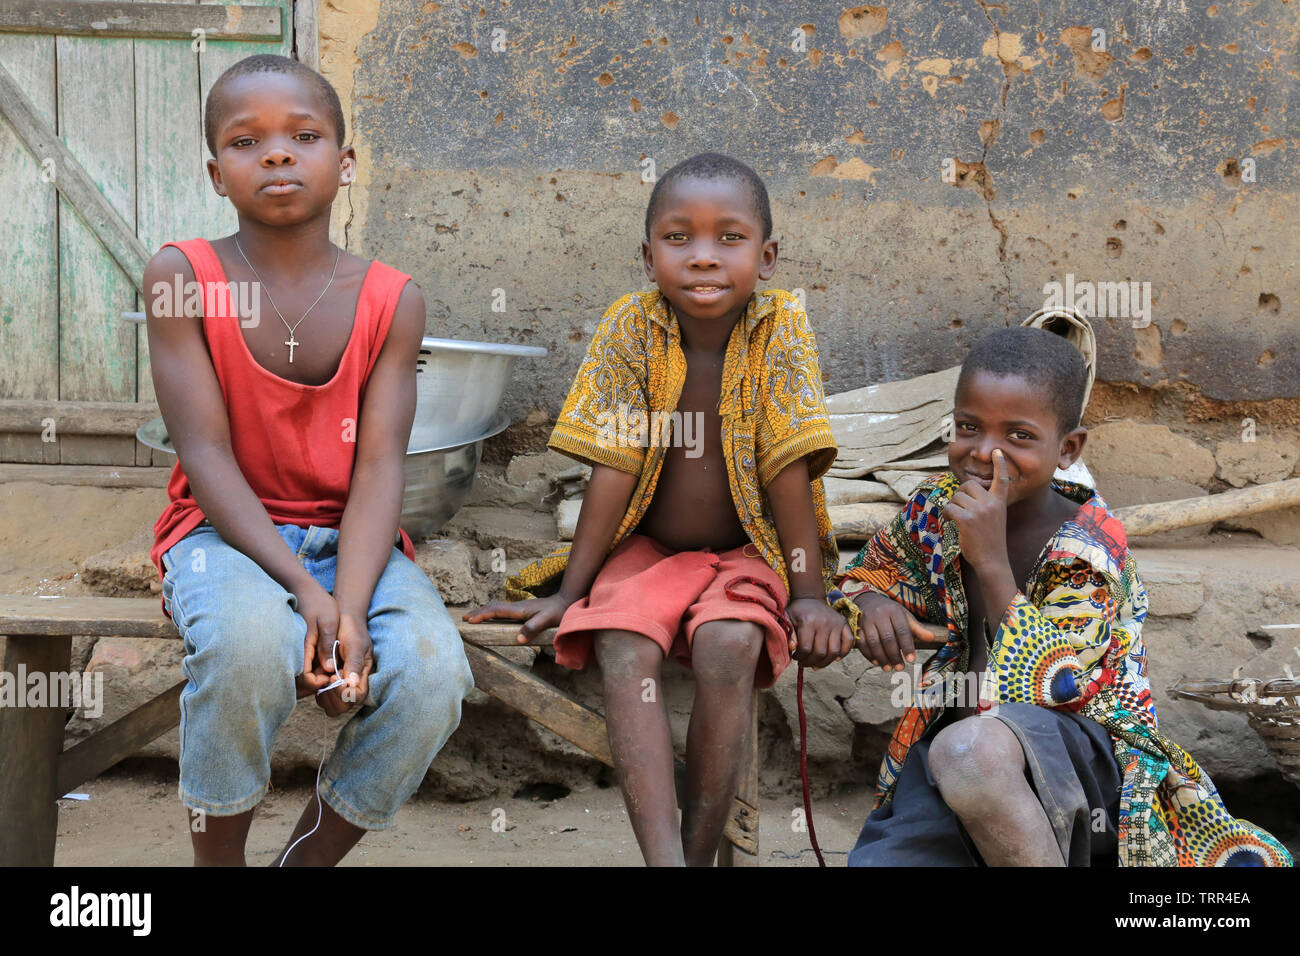 Groupe d'enfants dans un villaggio. Datcha Attikpayé. Il Togo. Afrique de l'Ouest. Foto Stock